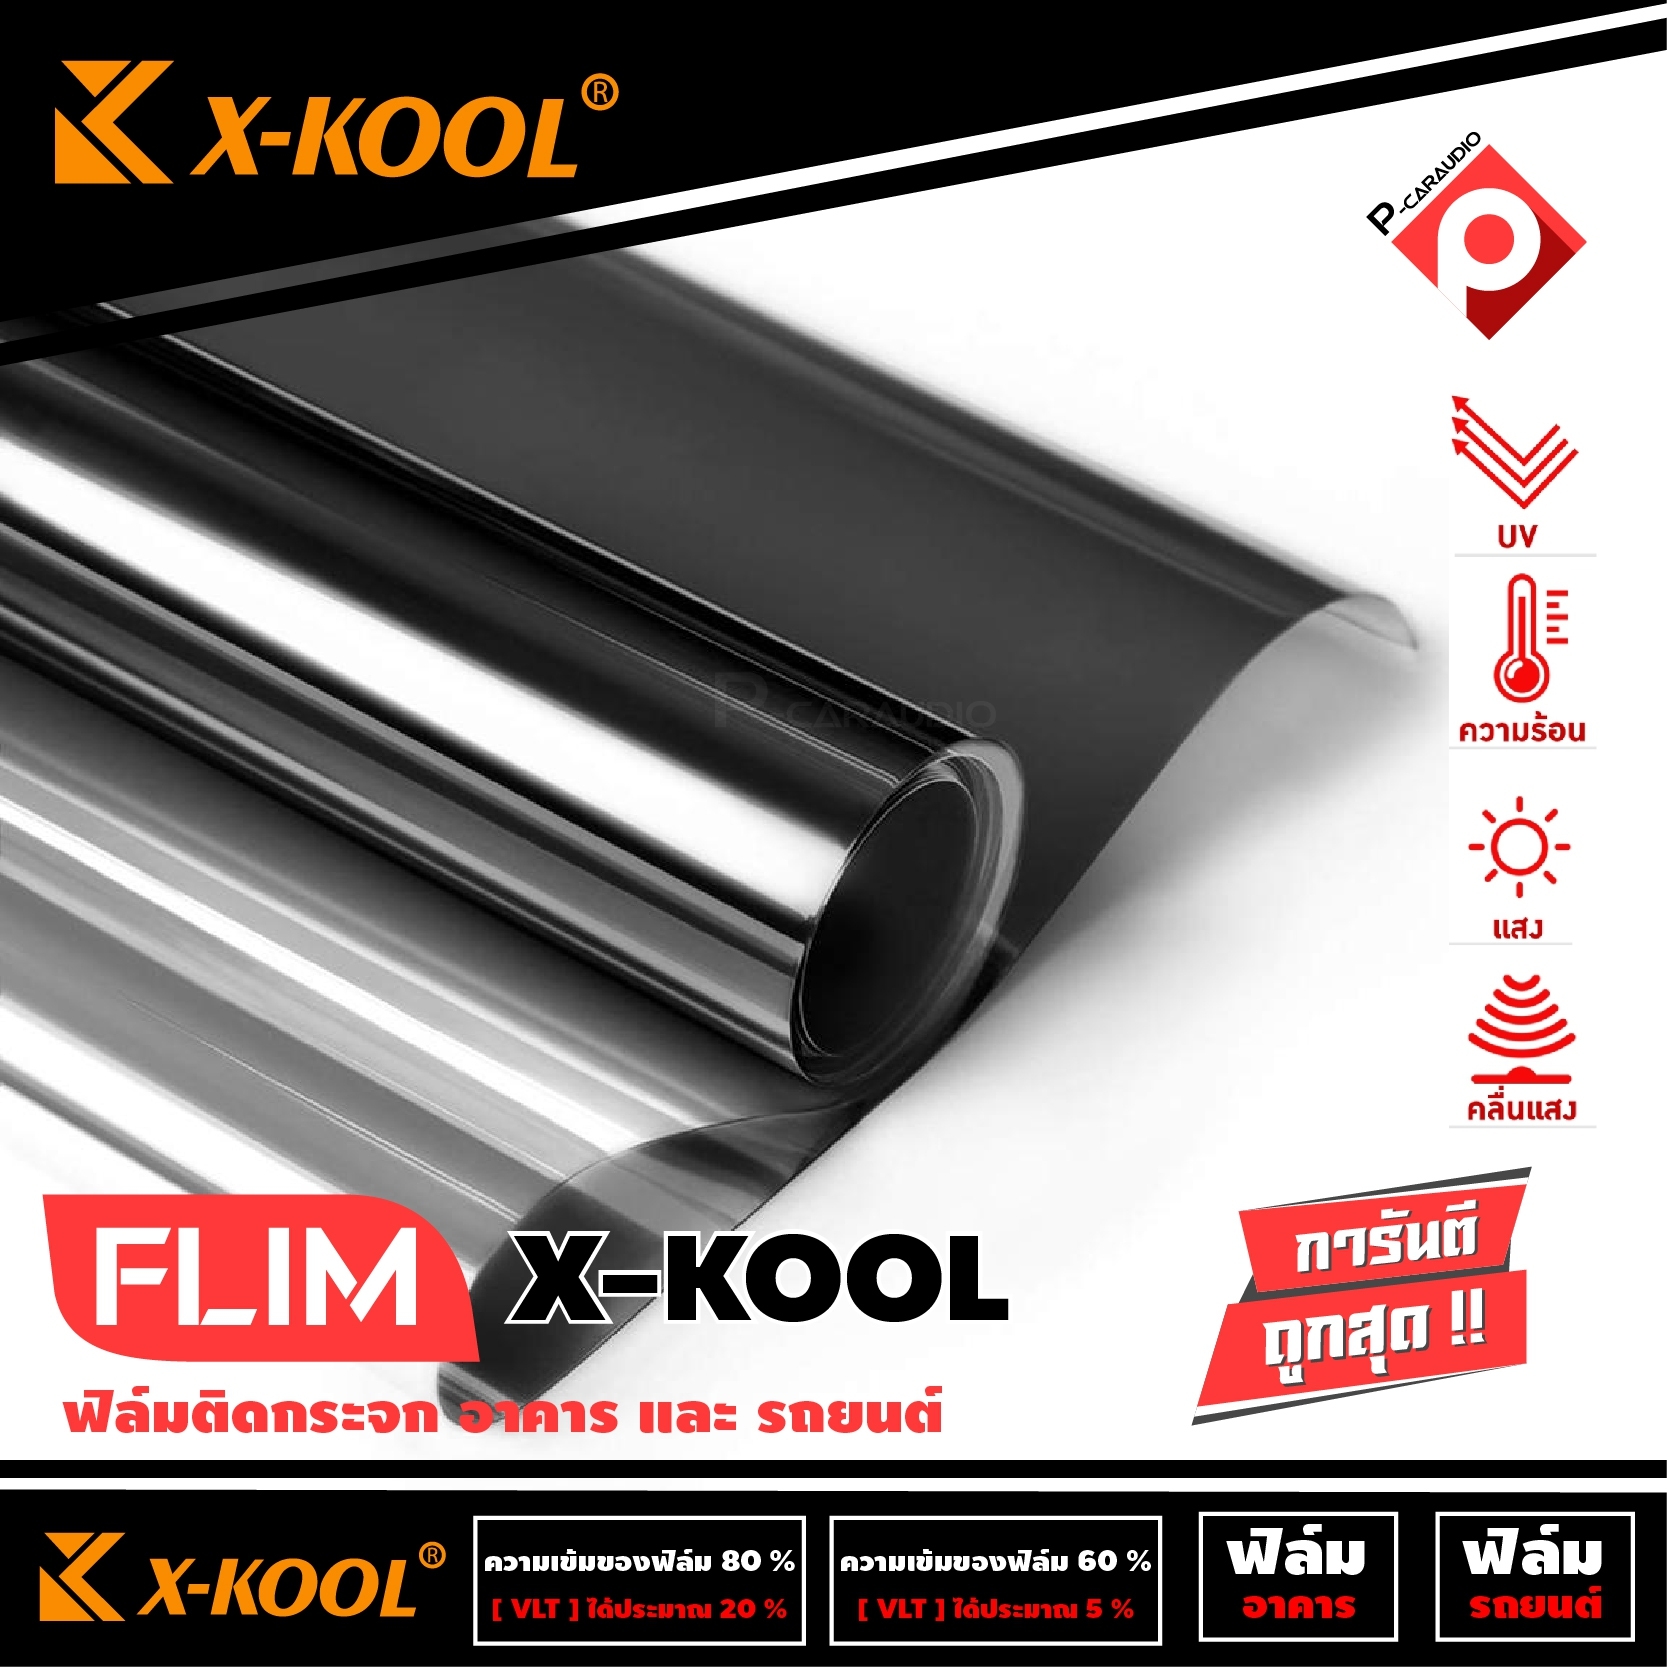 FLIM X-KOOL ฟิล์มดำกรองแสงยกม้วน X-KOOL ฟิล์มติดรถยนต์ ฟิล์มติดอาคาร คอนโด หน้าต่าง ประตู กรองแสง 60% และ 80% ขนาด 500 ตารางฟุต